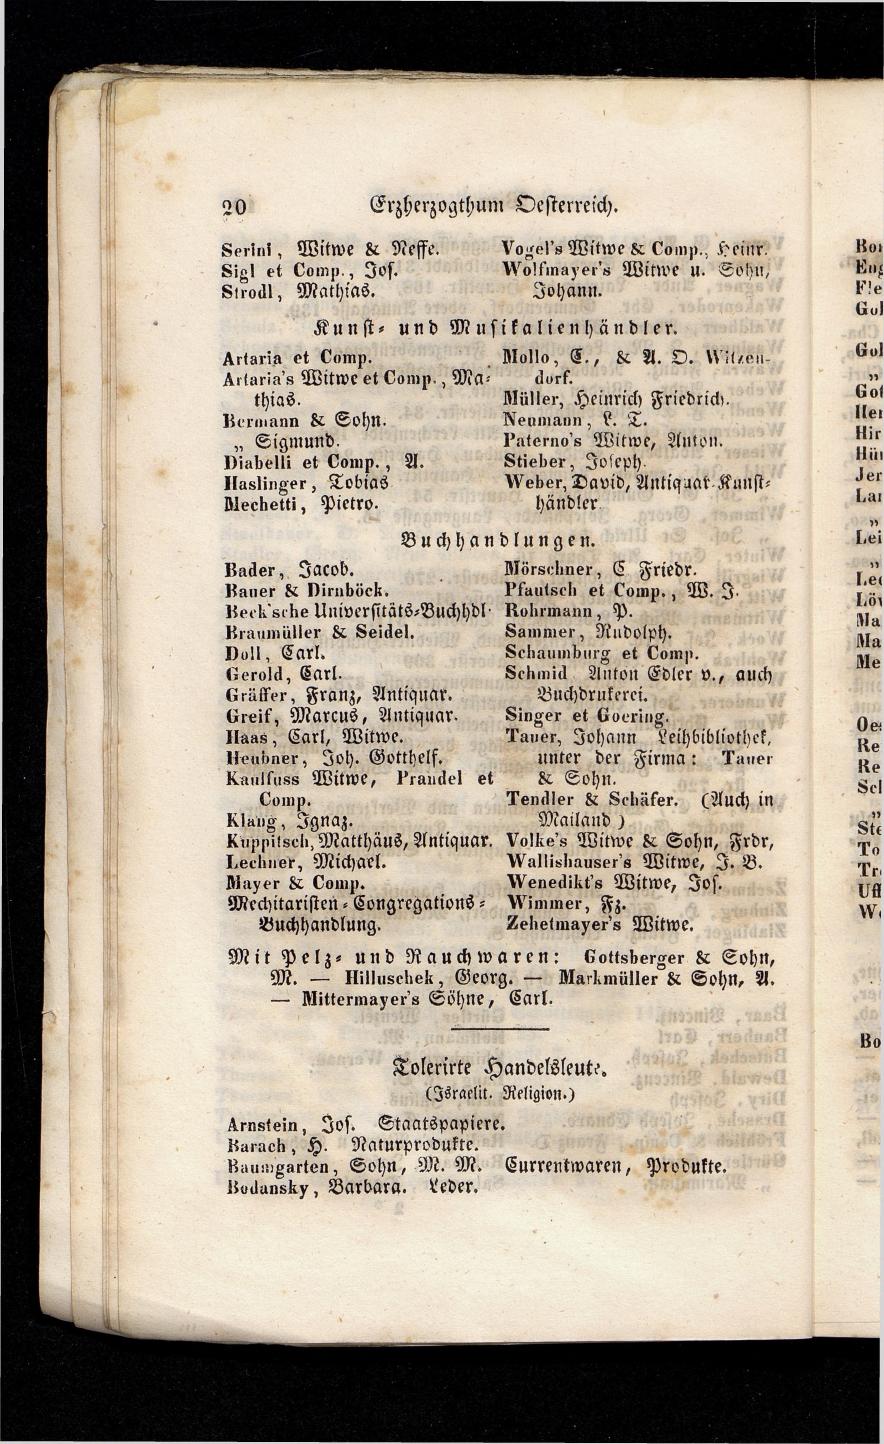 Grosses Adressbuch der Kaufleute. No. 13. Oesterreich ober u. unter der Enns 1844 - Seite 24